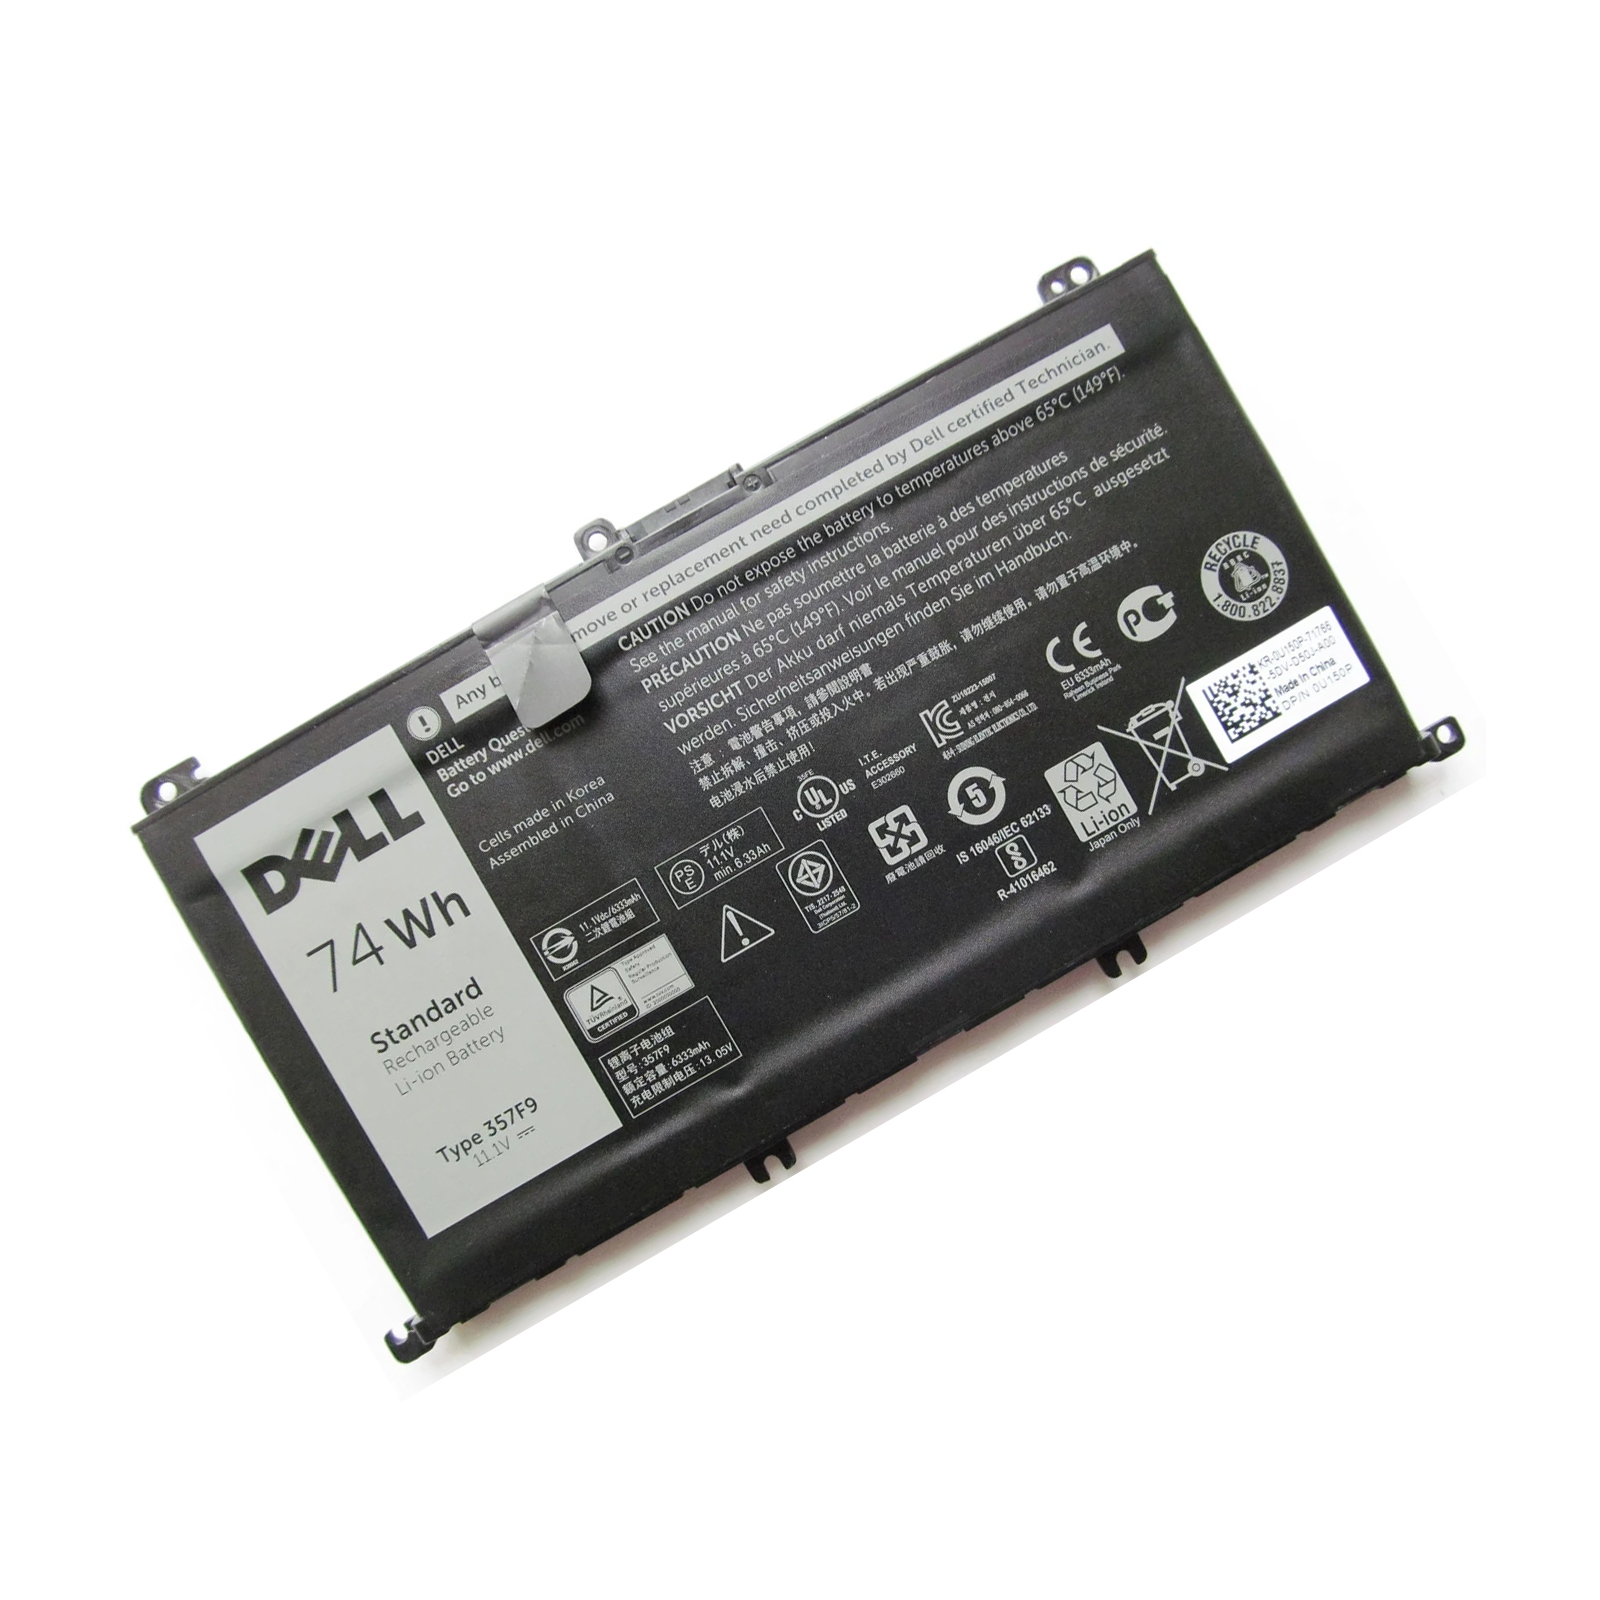 Аккумулятор для ноутбука Dell Inspiron 15-7559 357F9, 74Wh (6333mAh), 6cell, 11.1V, Li-ion (A47442) изображение 2